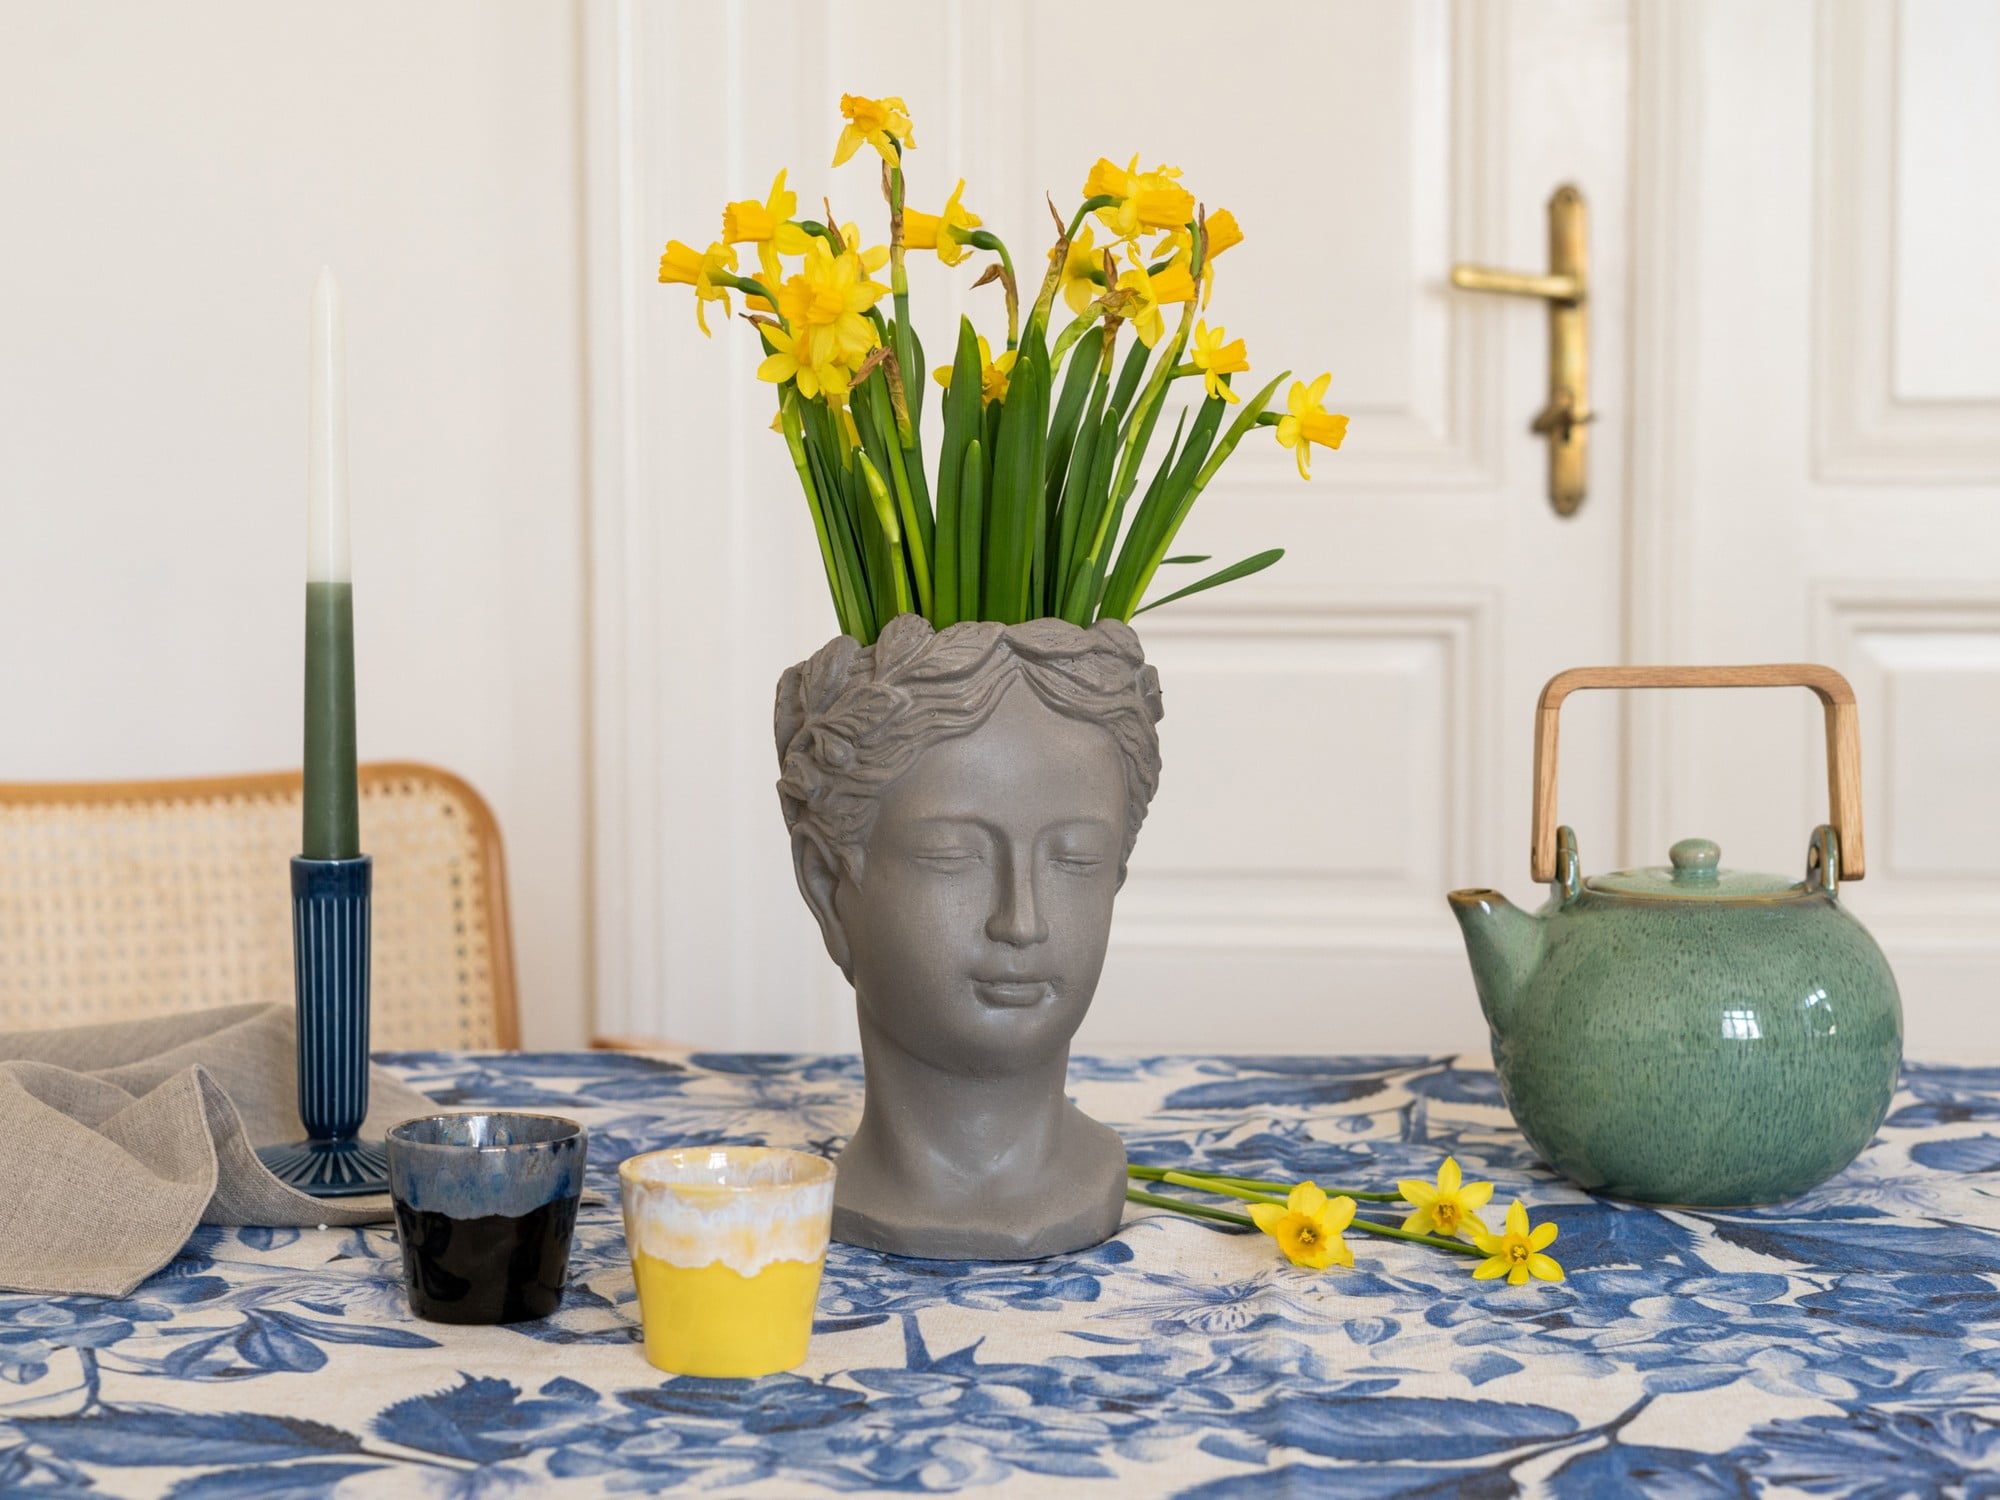 Kvetináč Isabel sa bude hodiť k žltým kvetom narcisov, ale aj k malým tulipánom alebo konvalinkám